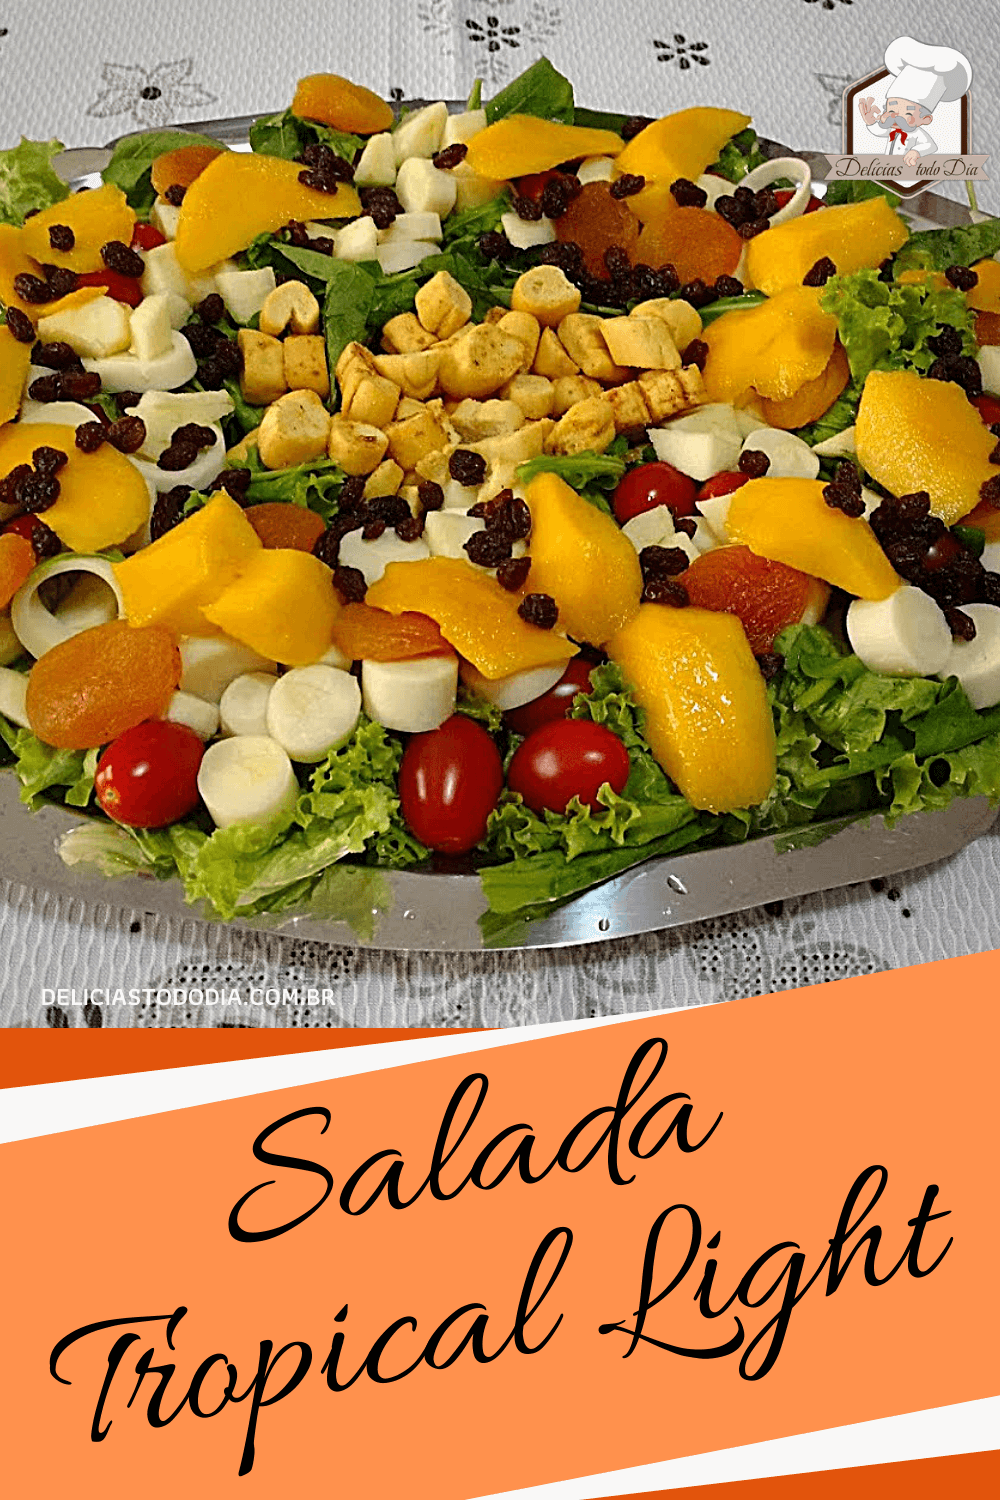 Salada tropical light 1